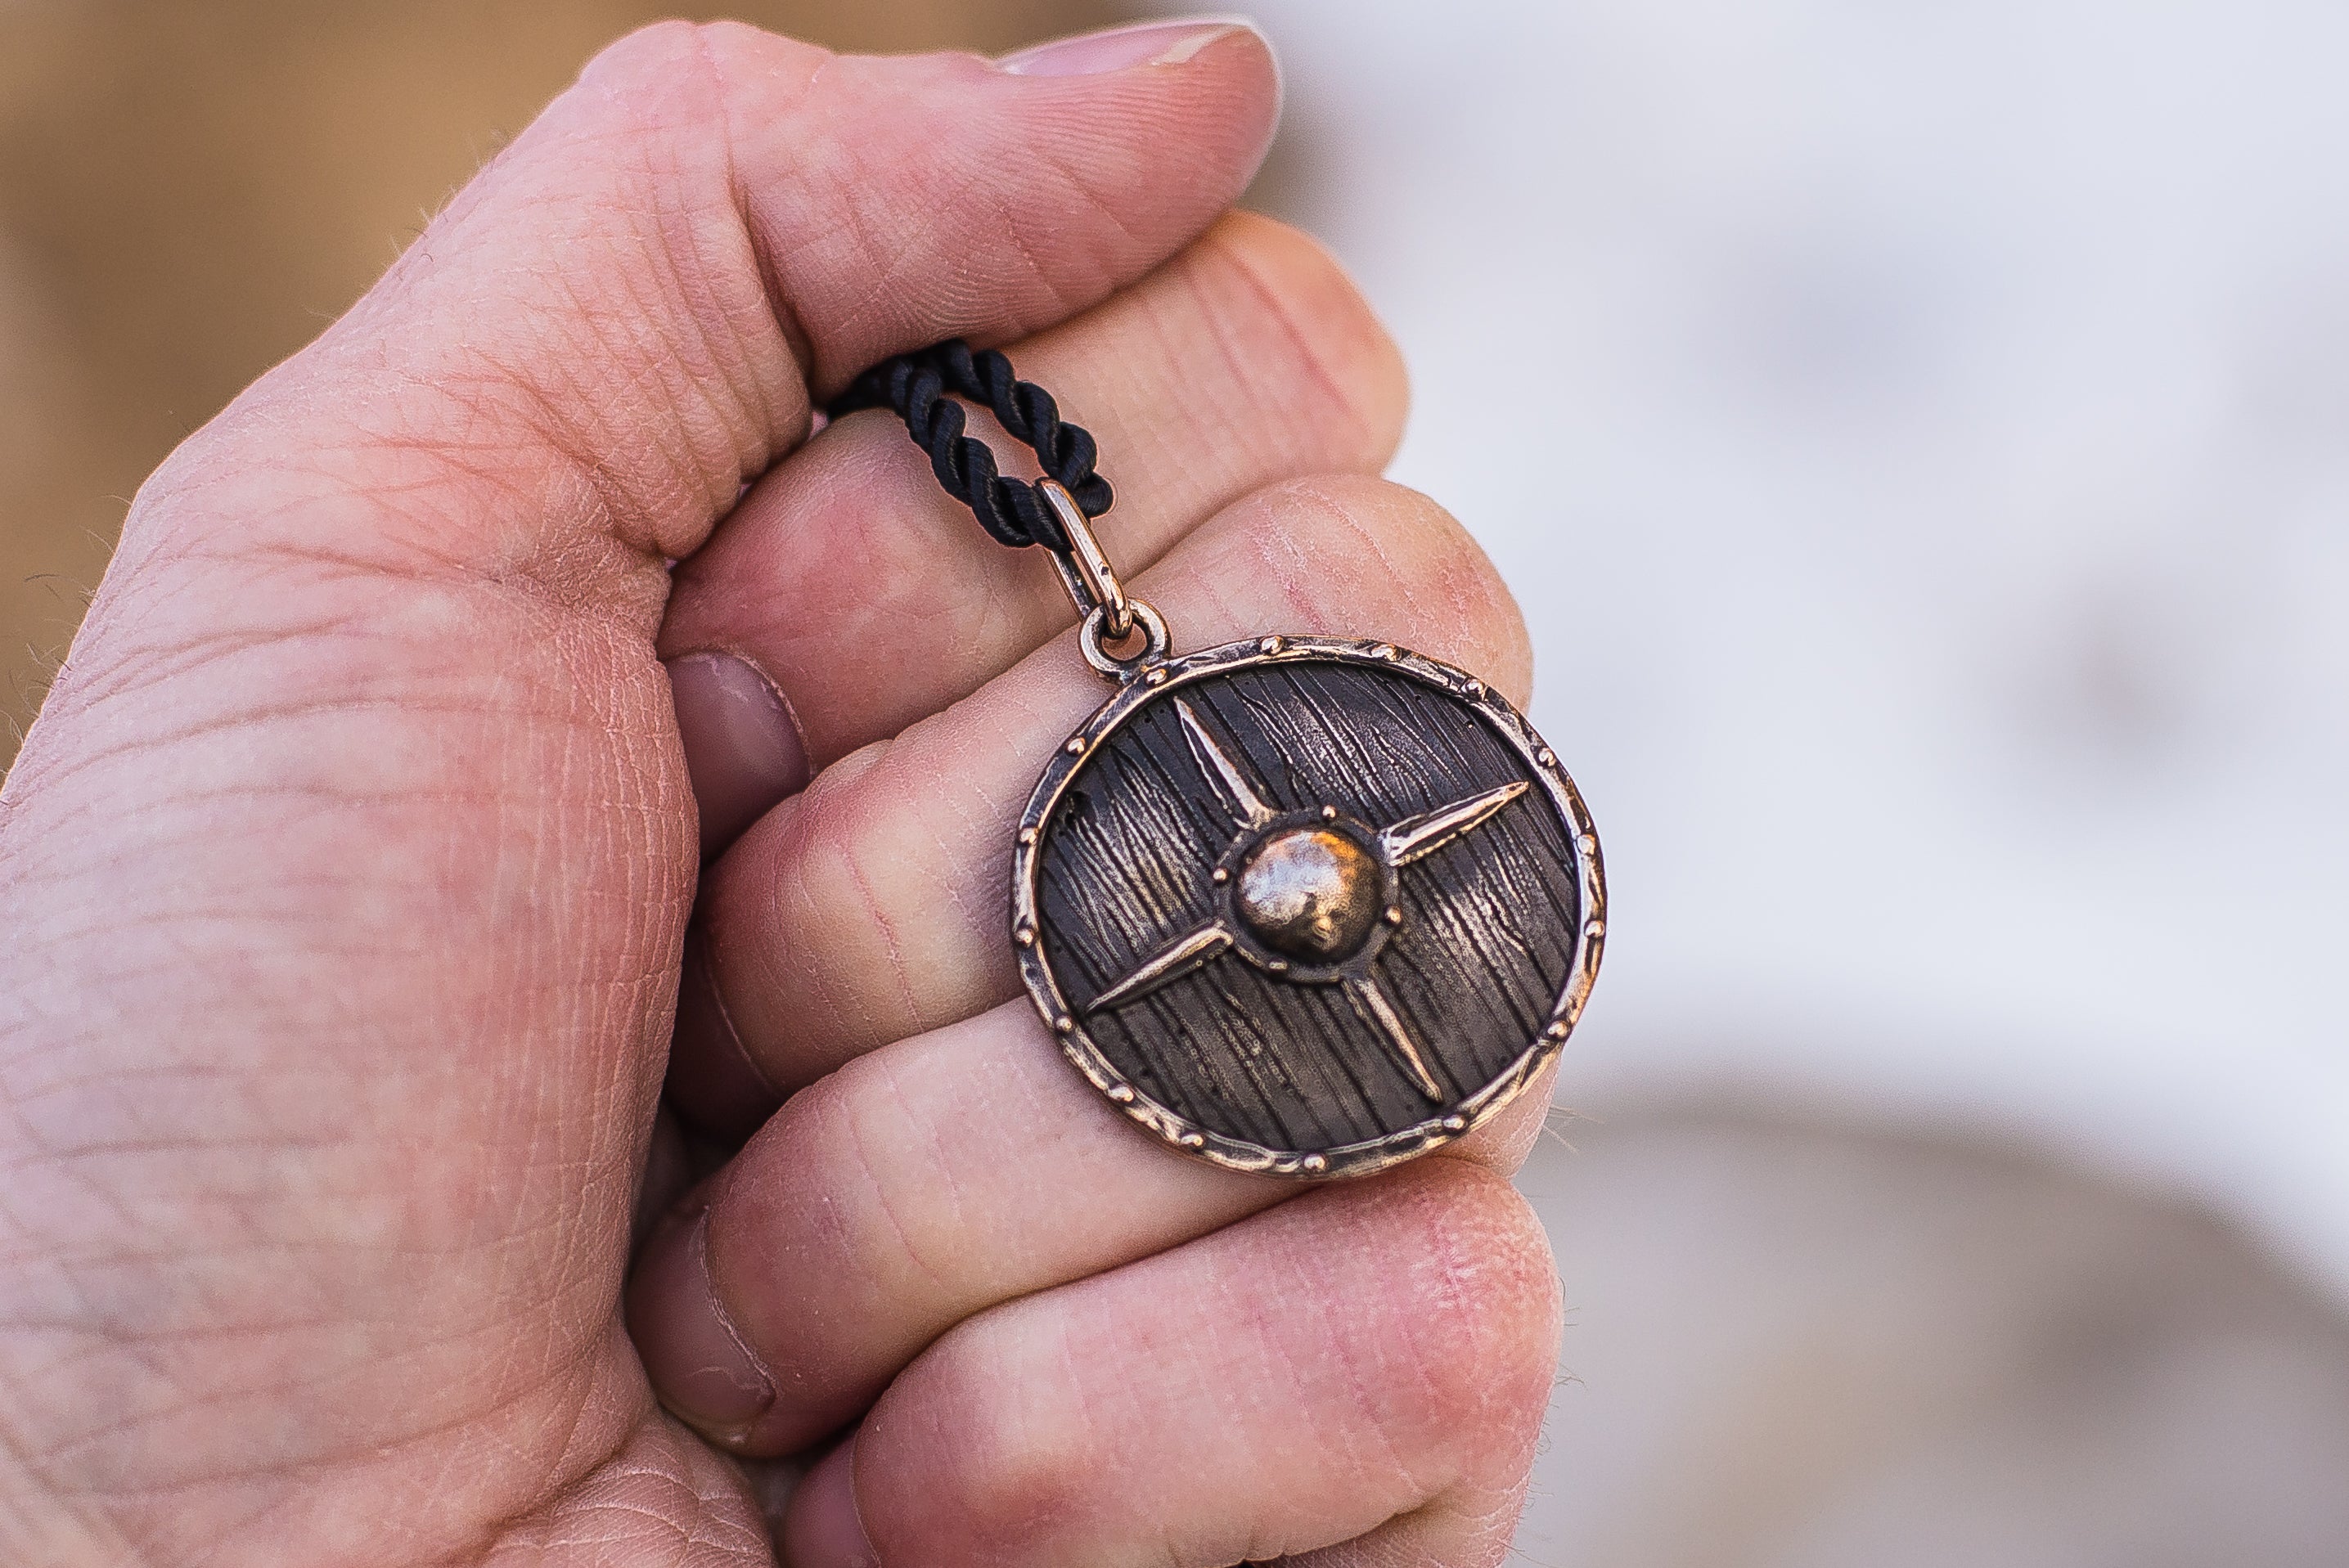 Rollo's Shield Bronze Pendant, Handmade